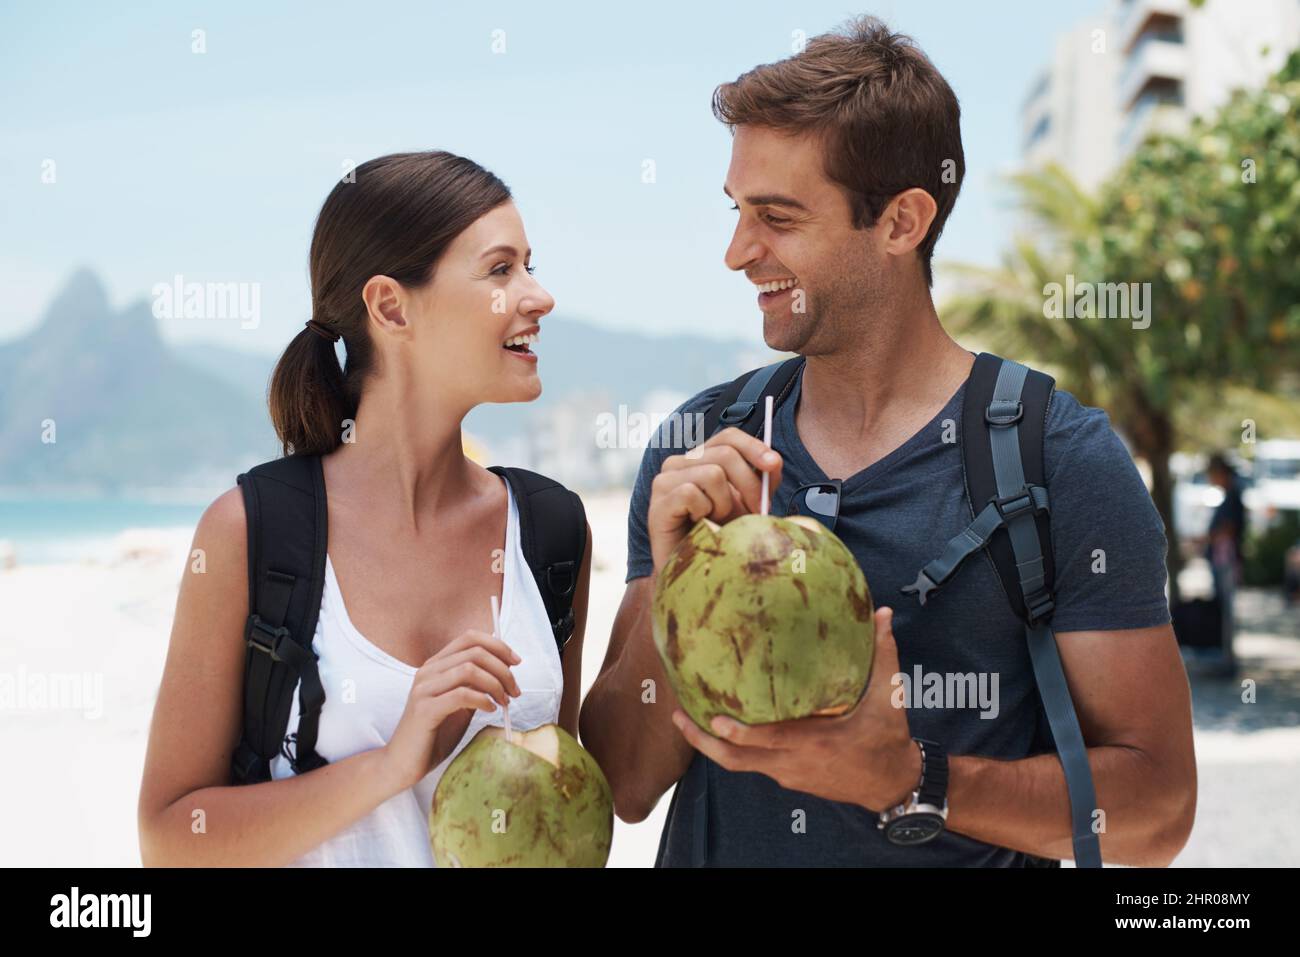 Wir hatten eine tolle Zeit im Paradies. Das junge Paar genießt einen Drink von einer Kokosnuss, während es einen Tag am Strand genießt. Stockfoto